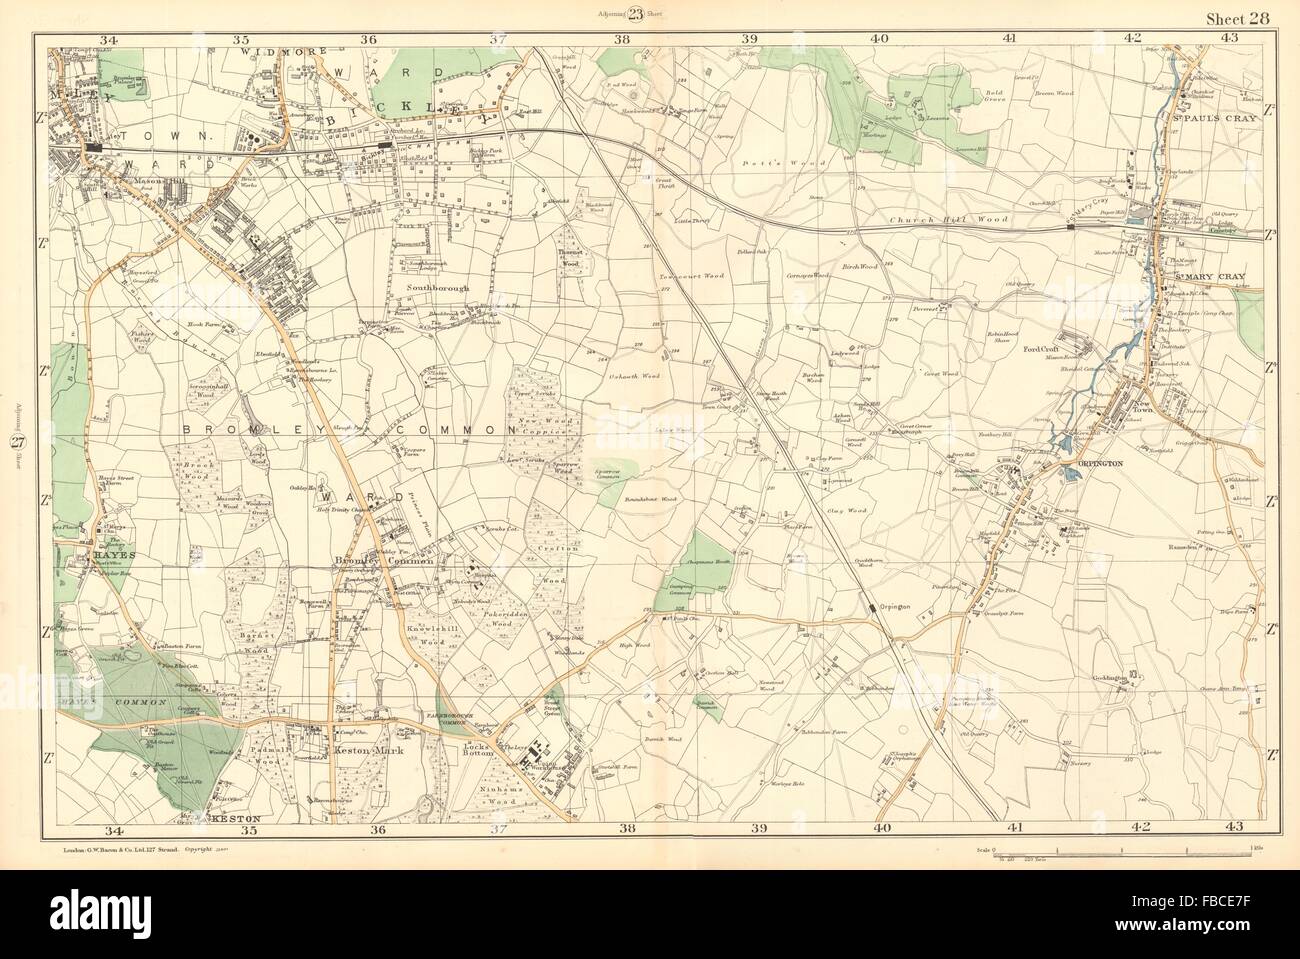 BROMLEY & ORPINGTON Hayes Petts Wood Keston St Paul's Mary Cray. BACON 1903 map Stock Photo